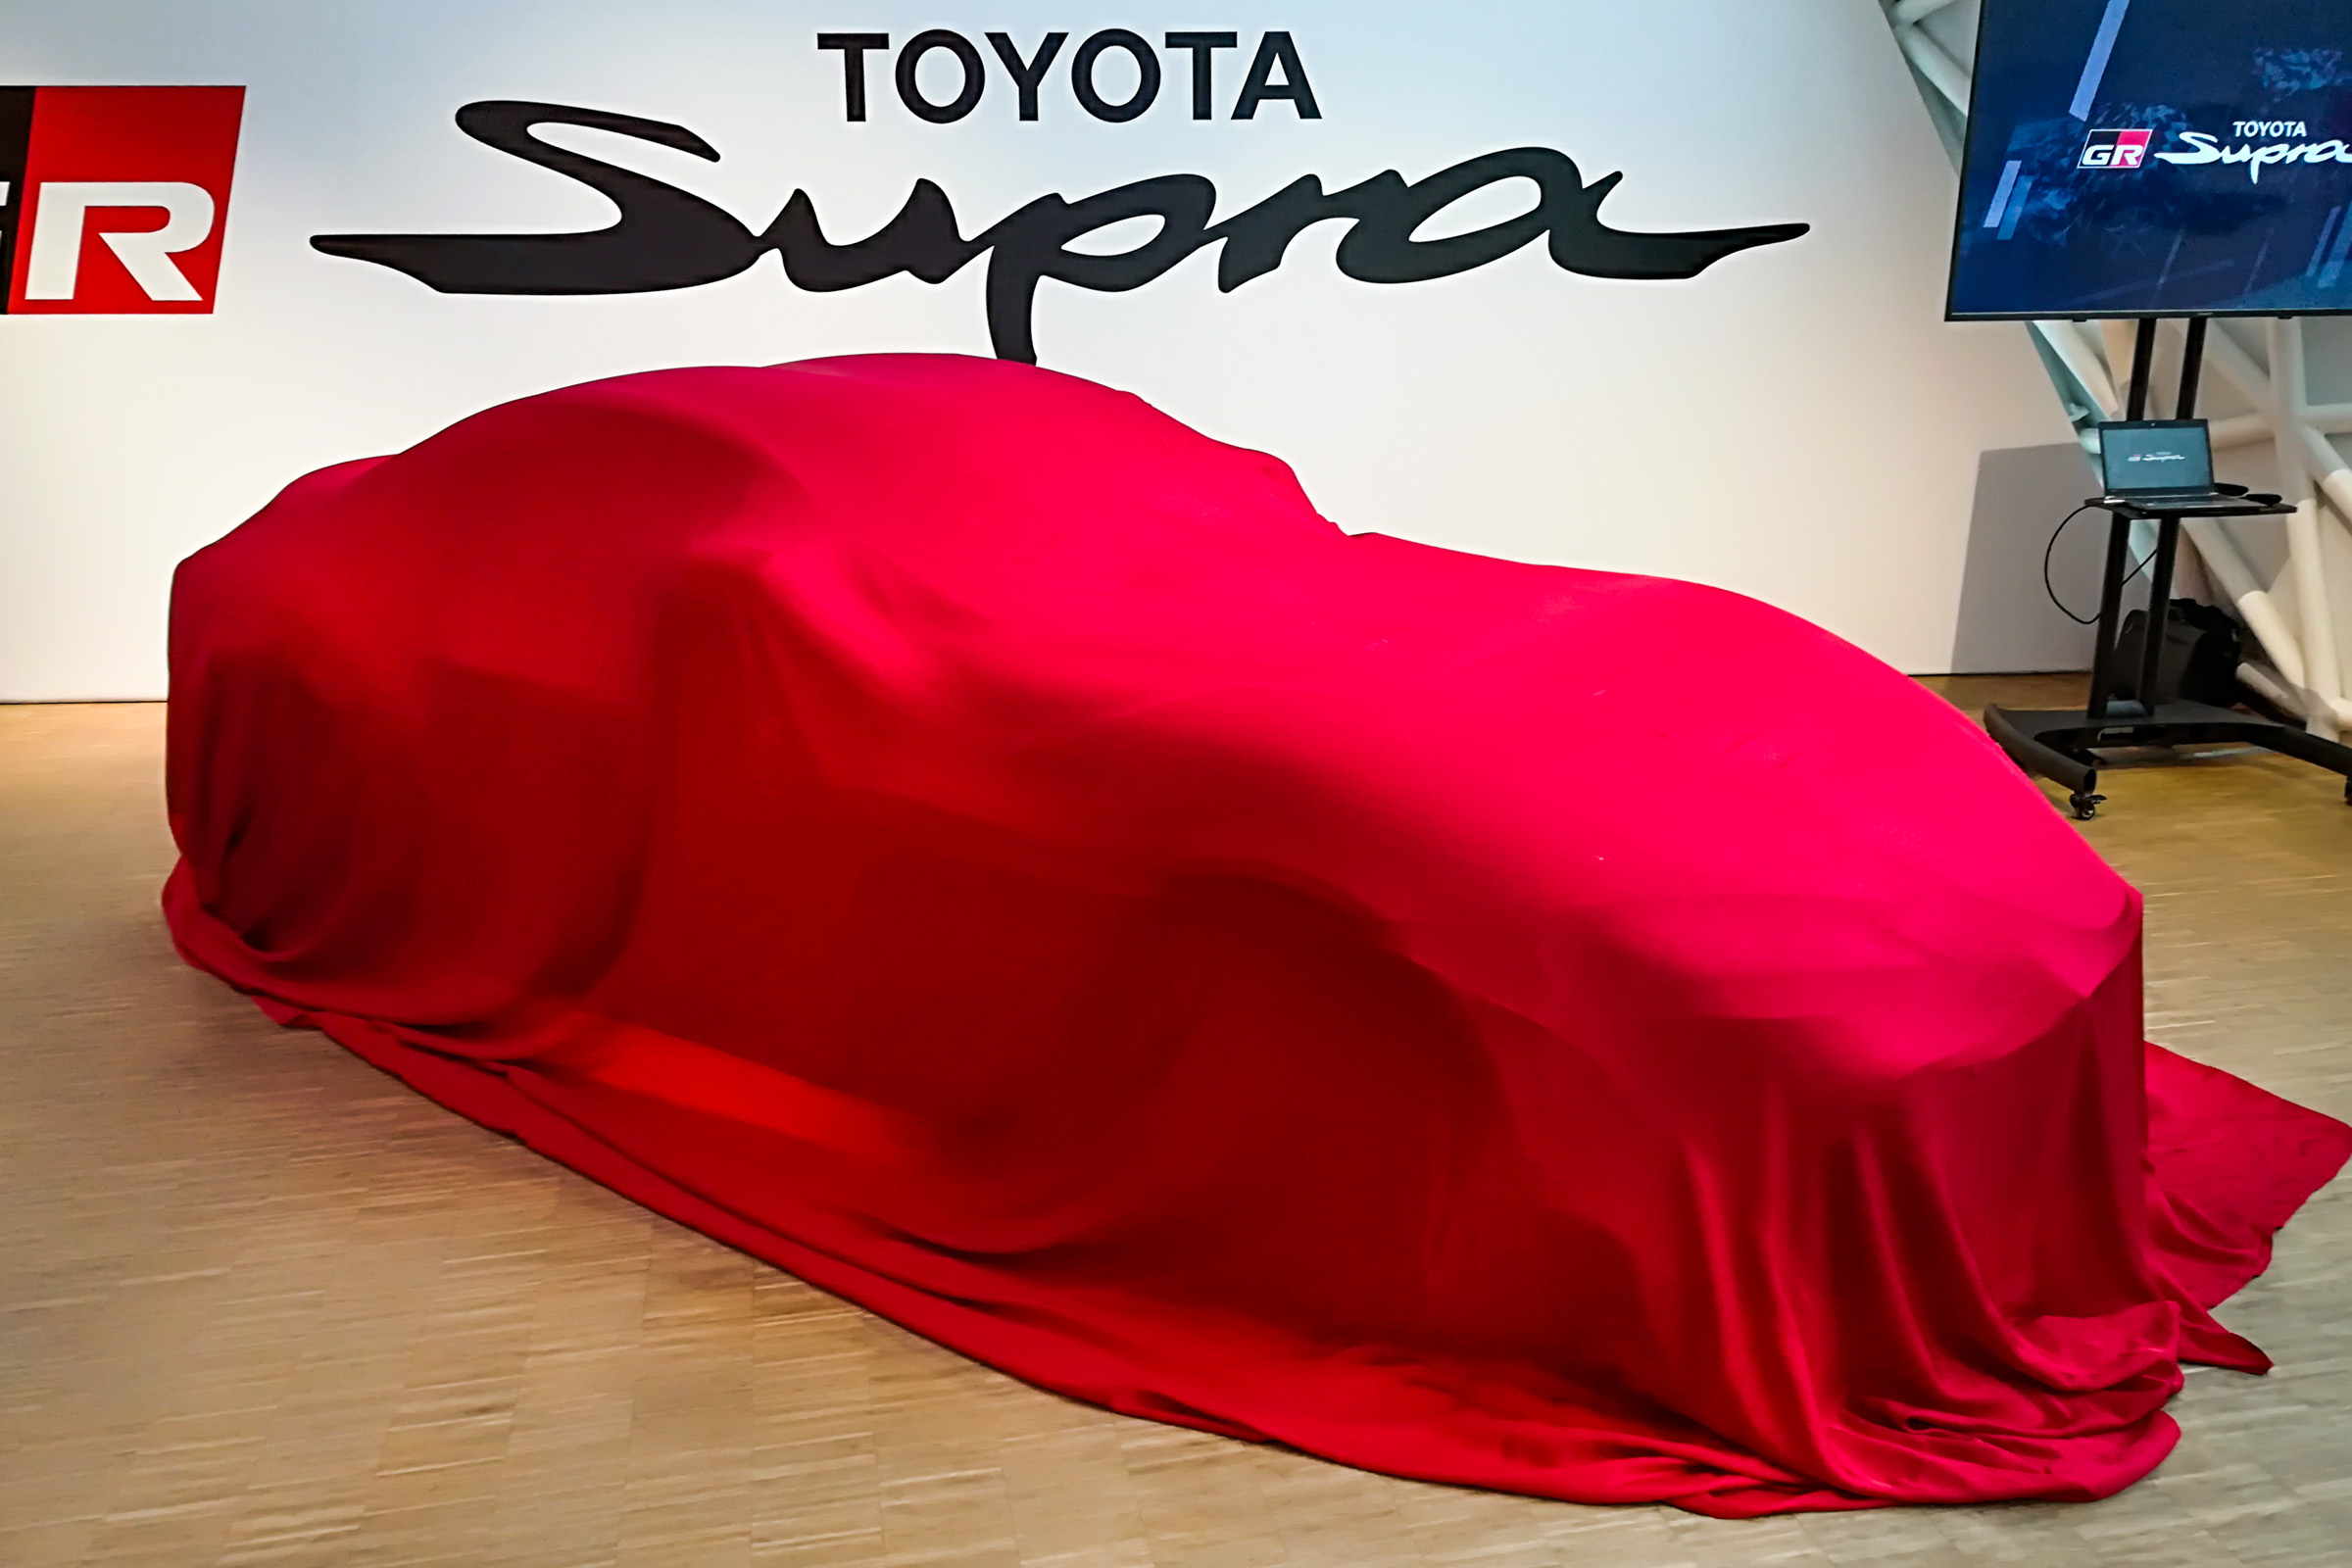 Toyota Supra 2019